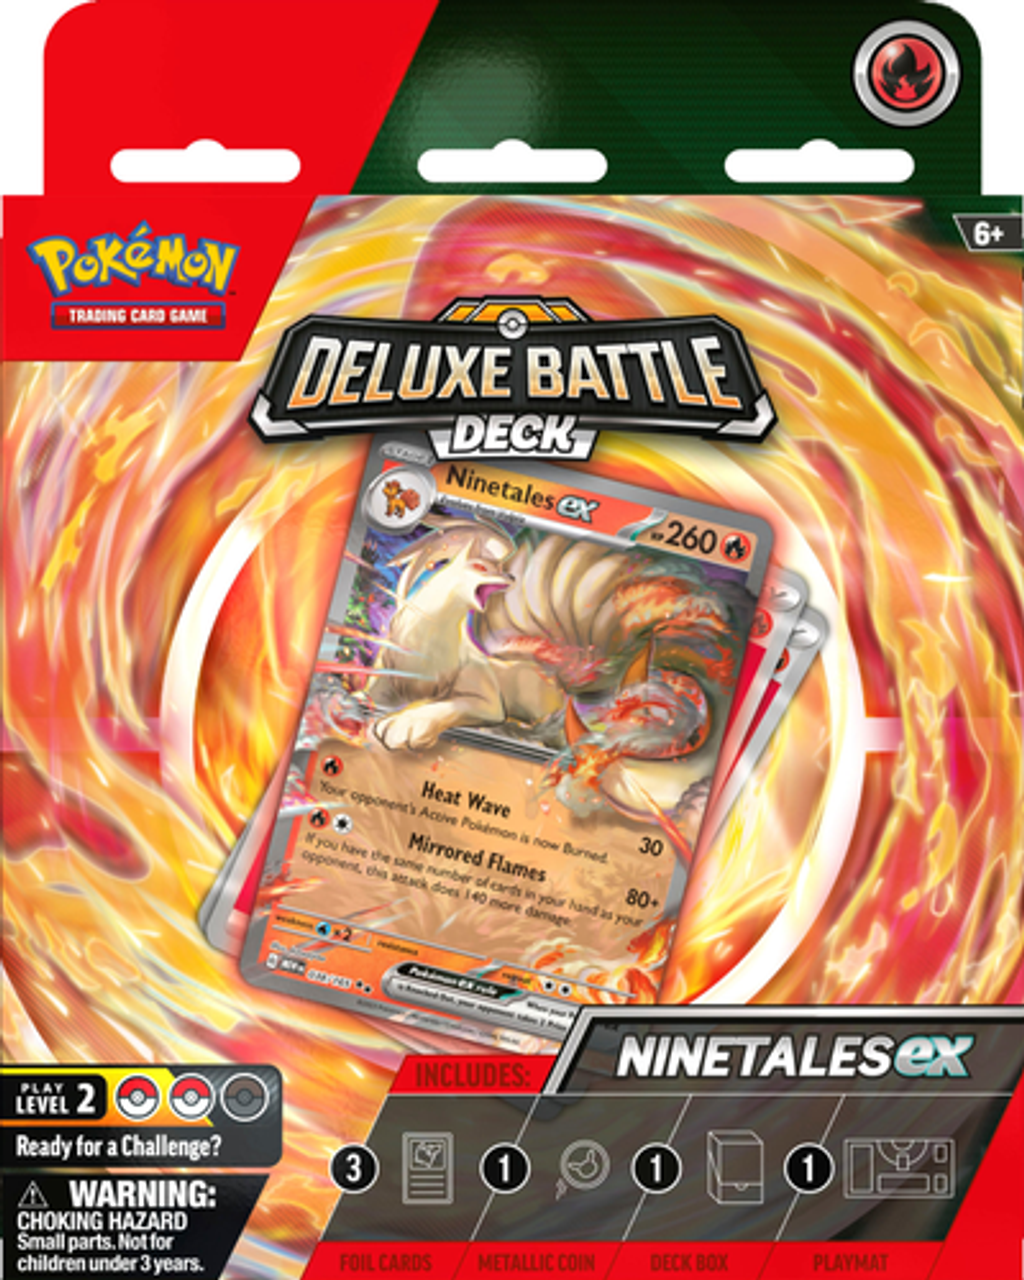 Pokémon TCG: Ninetales ex or Zapdos ex Deluxe Battle Deck